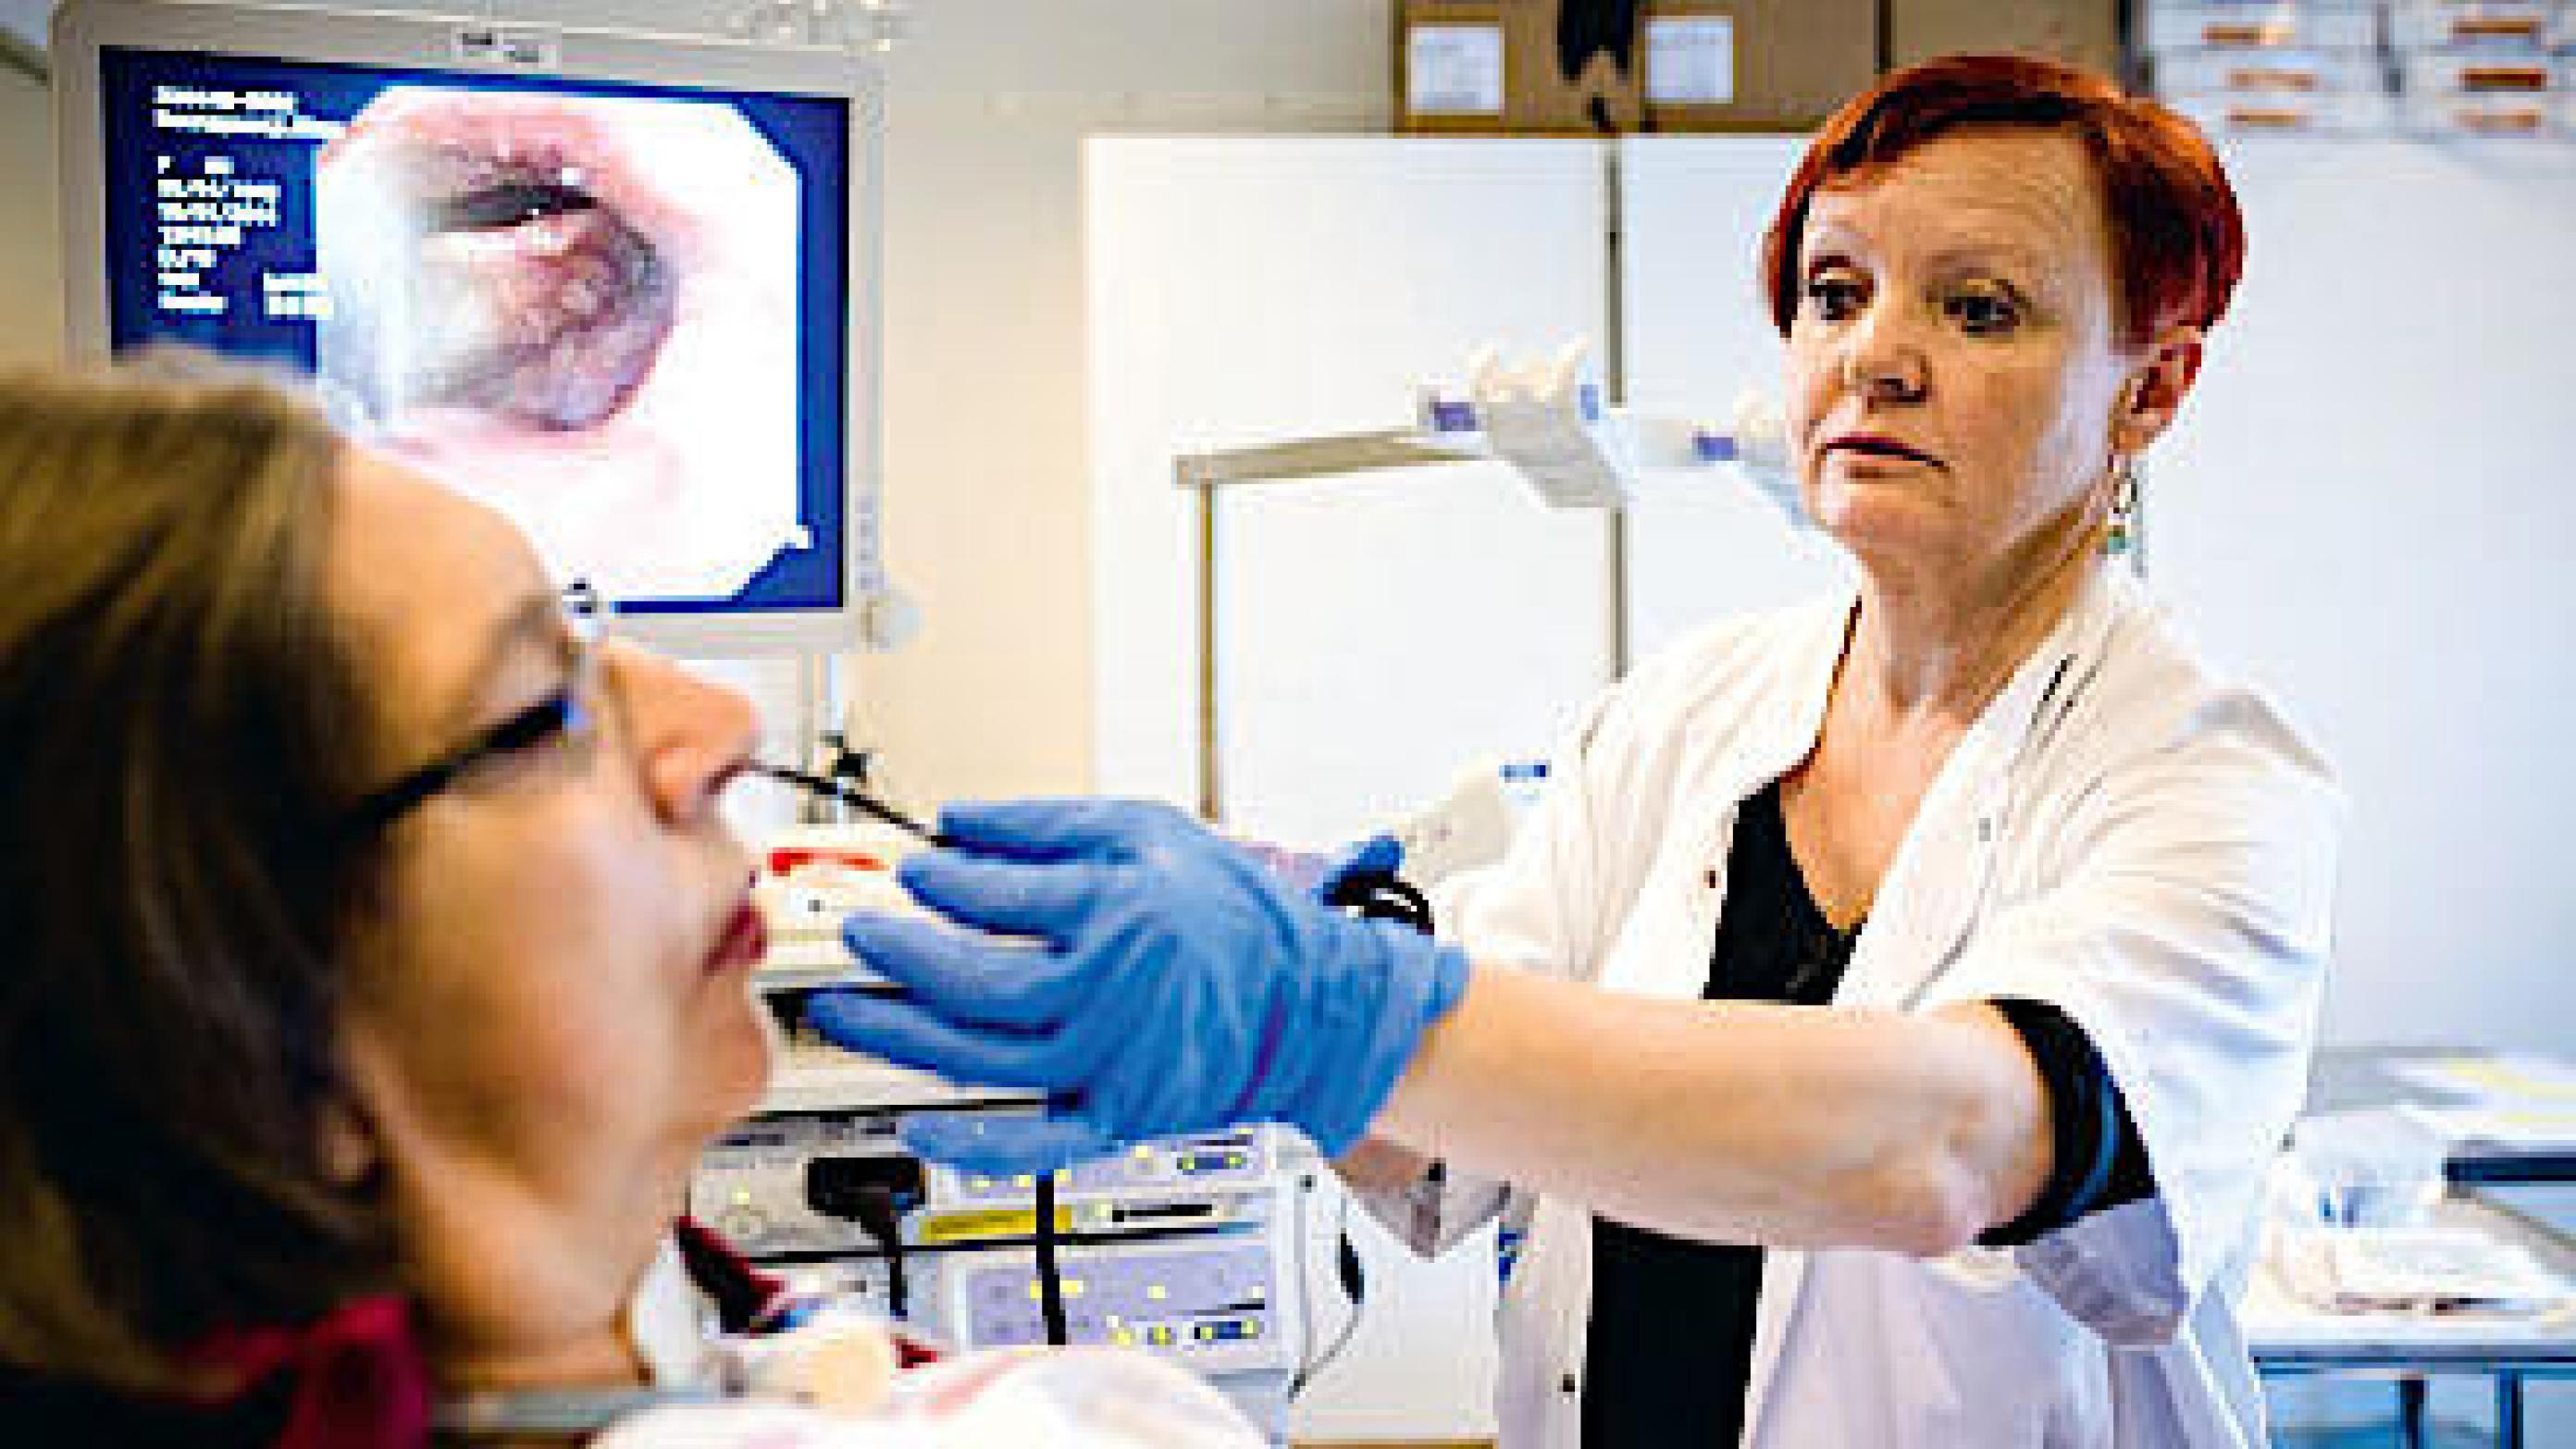 Vurdering af synkefunktion med fiberendoskopisk undersøgelse hos en patient med svær dysfagi. Foto: Mathias Fløe Lind.